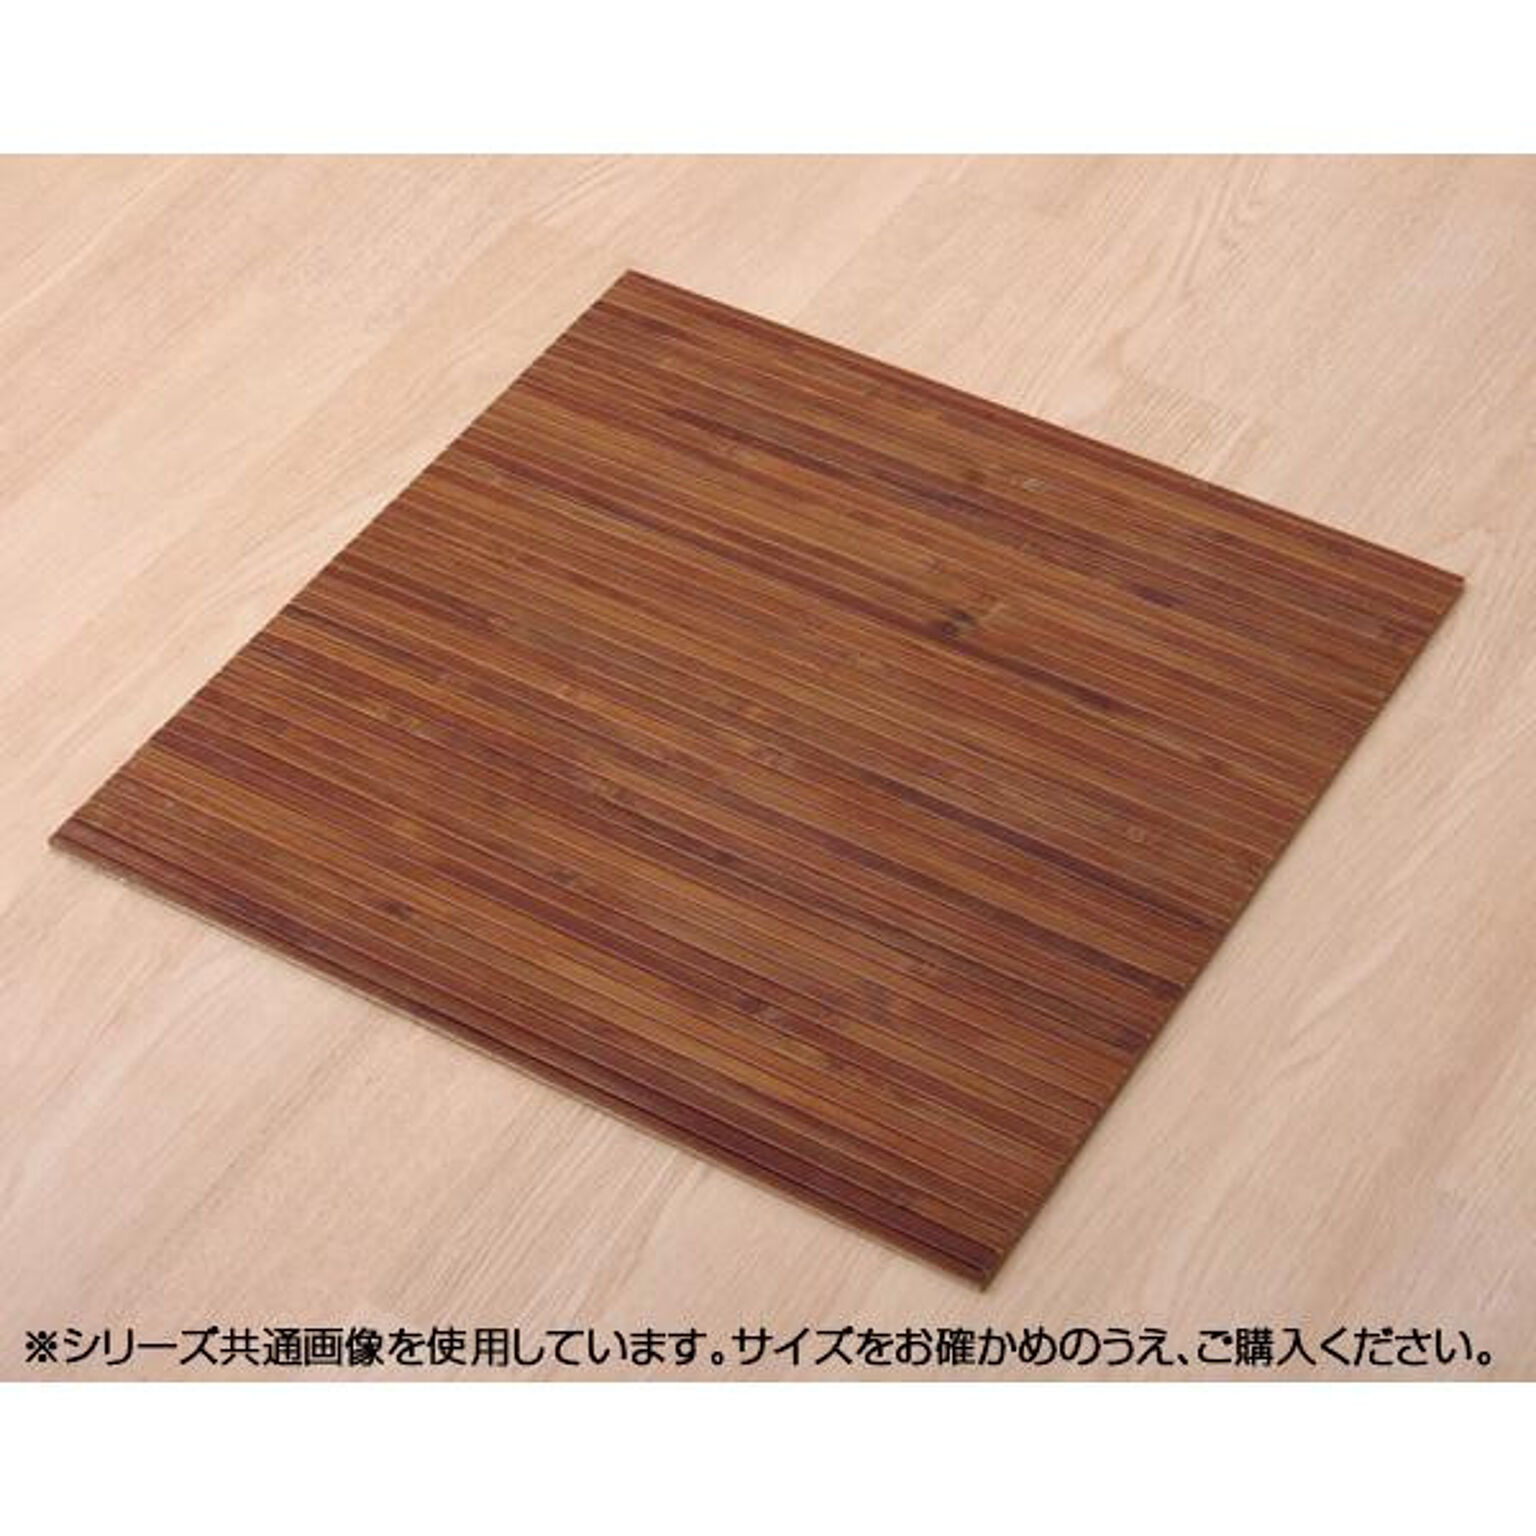 バンブー 竹 玄関マット 『竹王』 約40×40cm 5353200